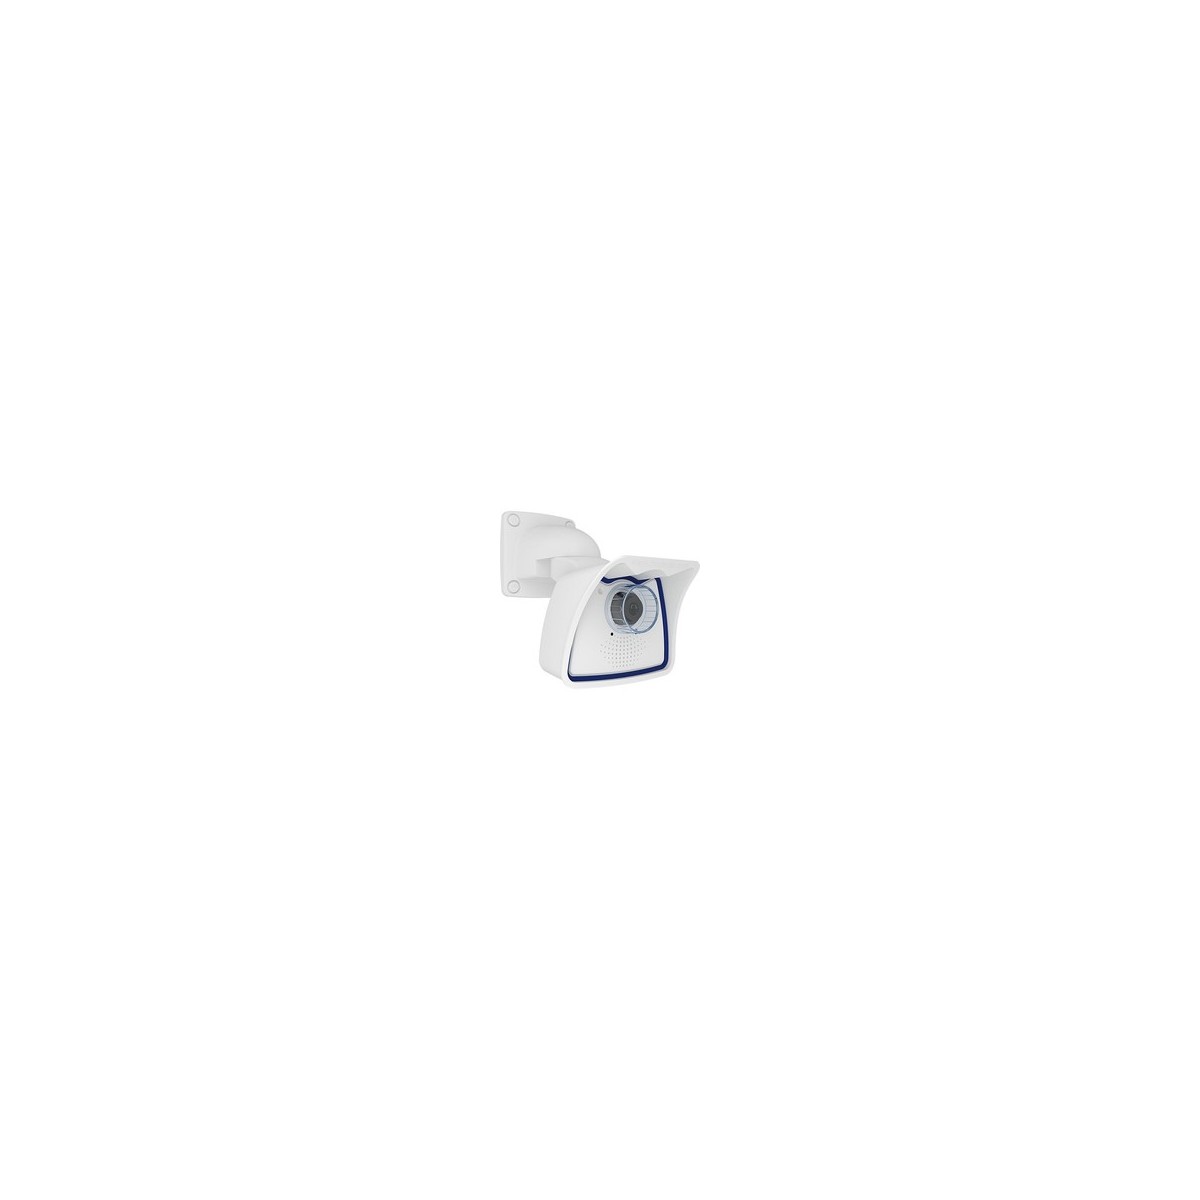 Mobotix Mx-M26B-6N036 - IP security camera - Indoor  outdoor - Wired - EN55032: 2012 EN55022: 2010 EN55024: 2010 EN50121-4: 2015